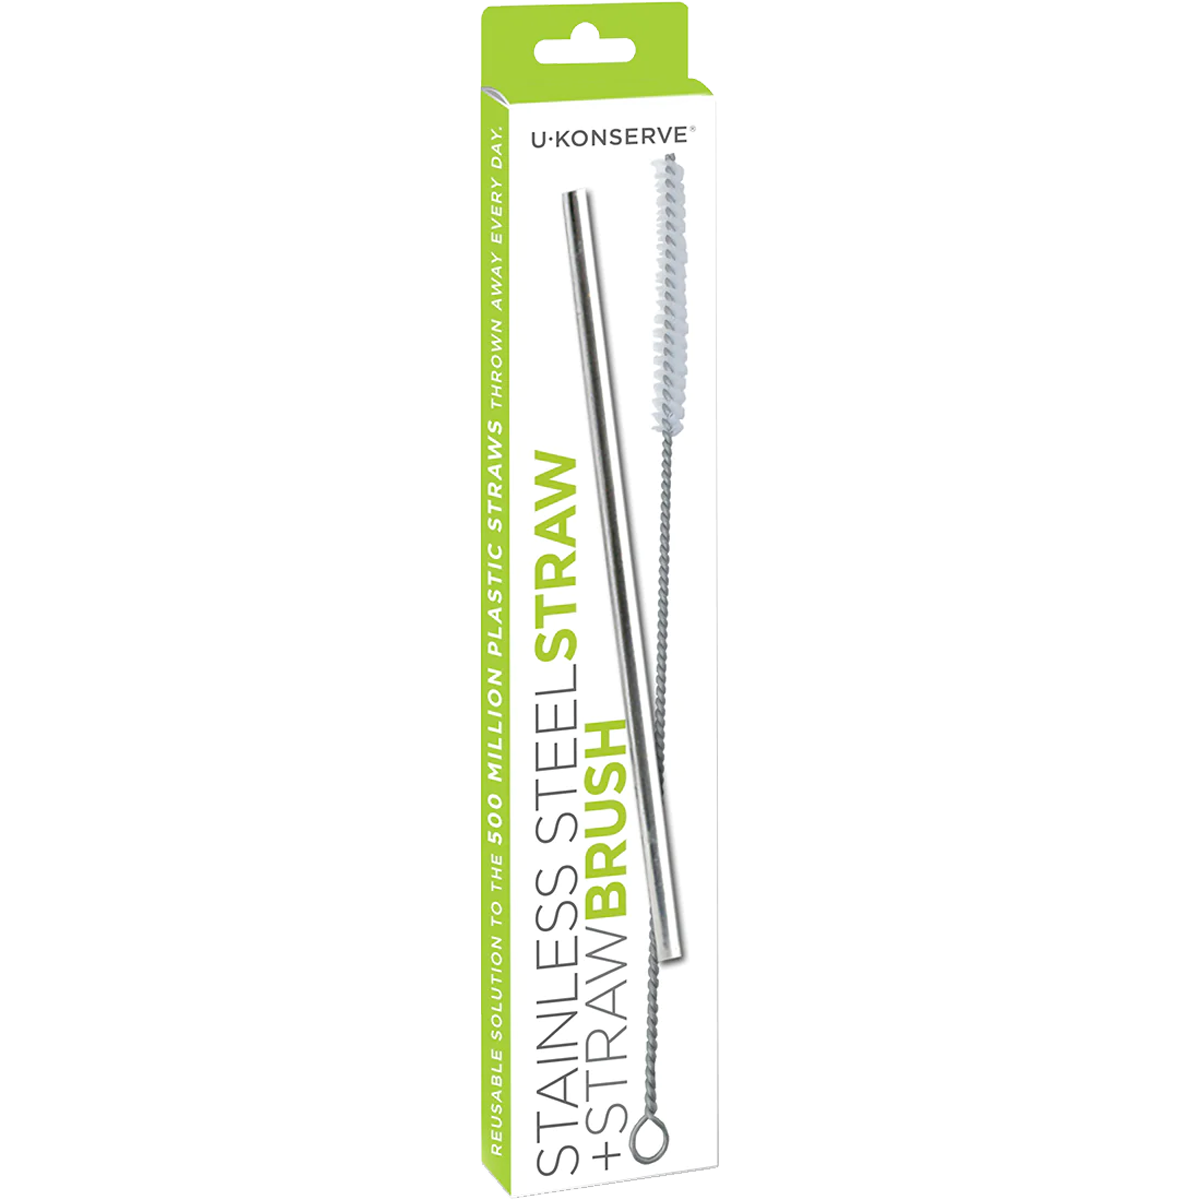 Stainless Steel Straw + Straw Brush alternate view